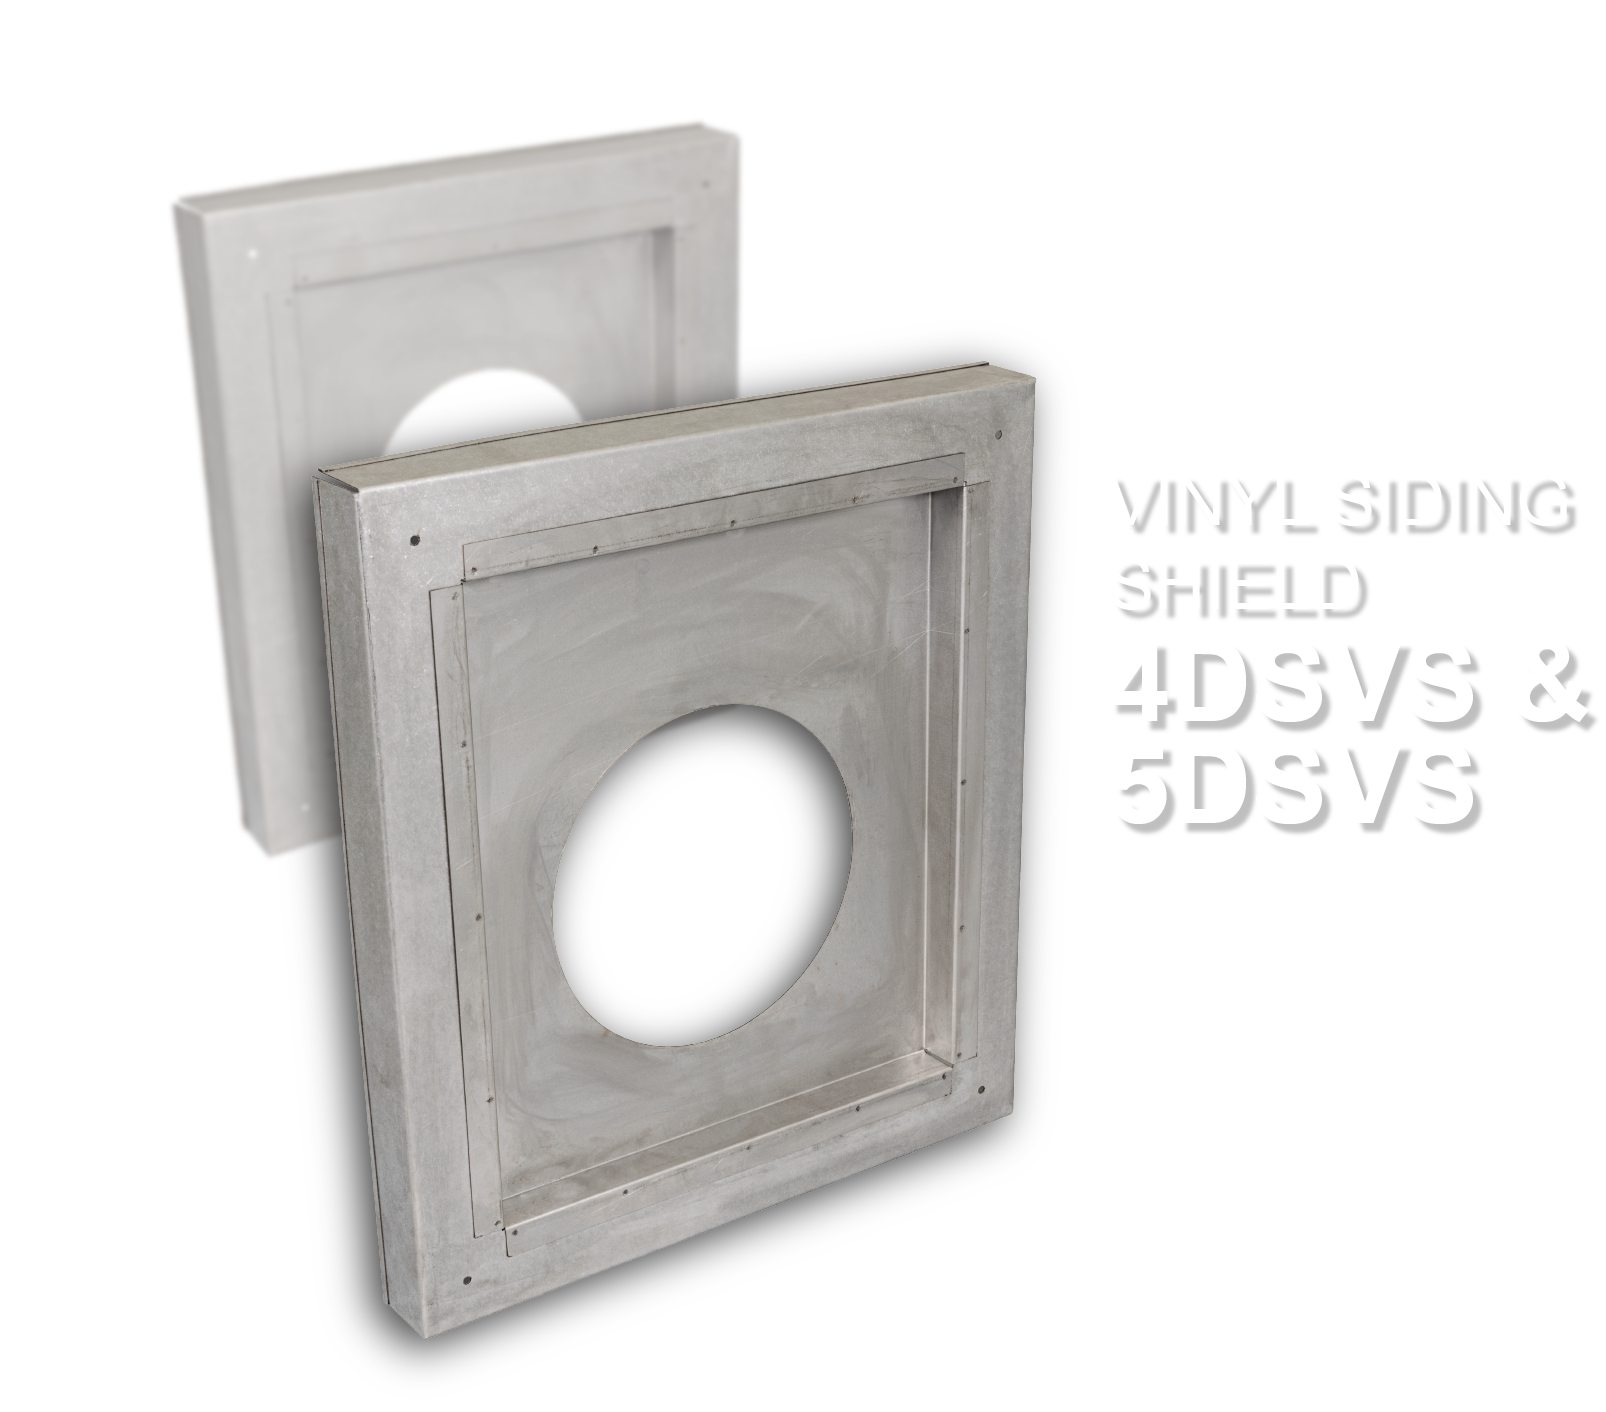 Vinyl Siding Shield